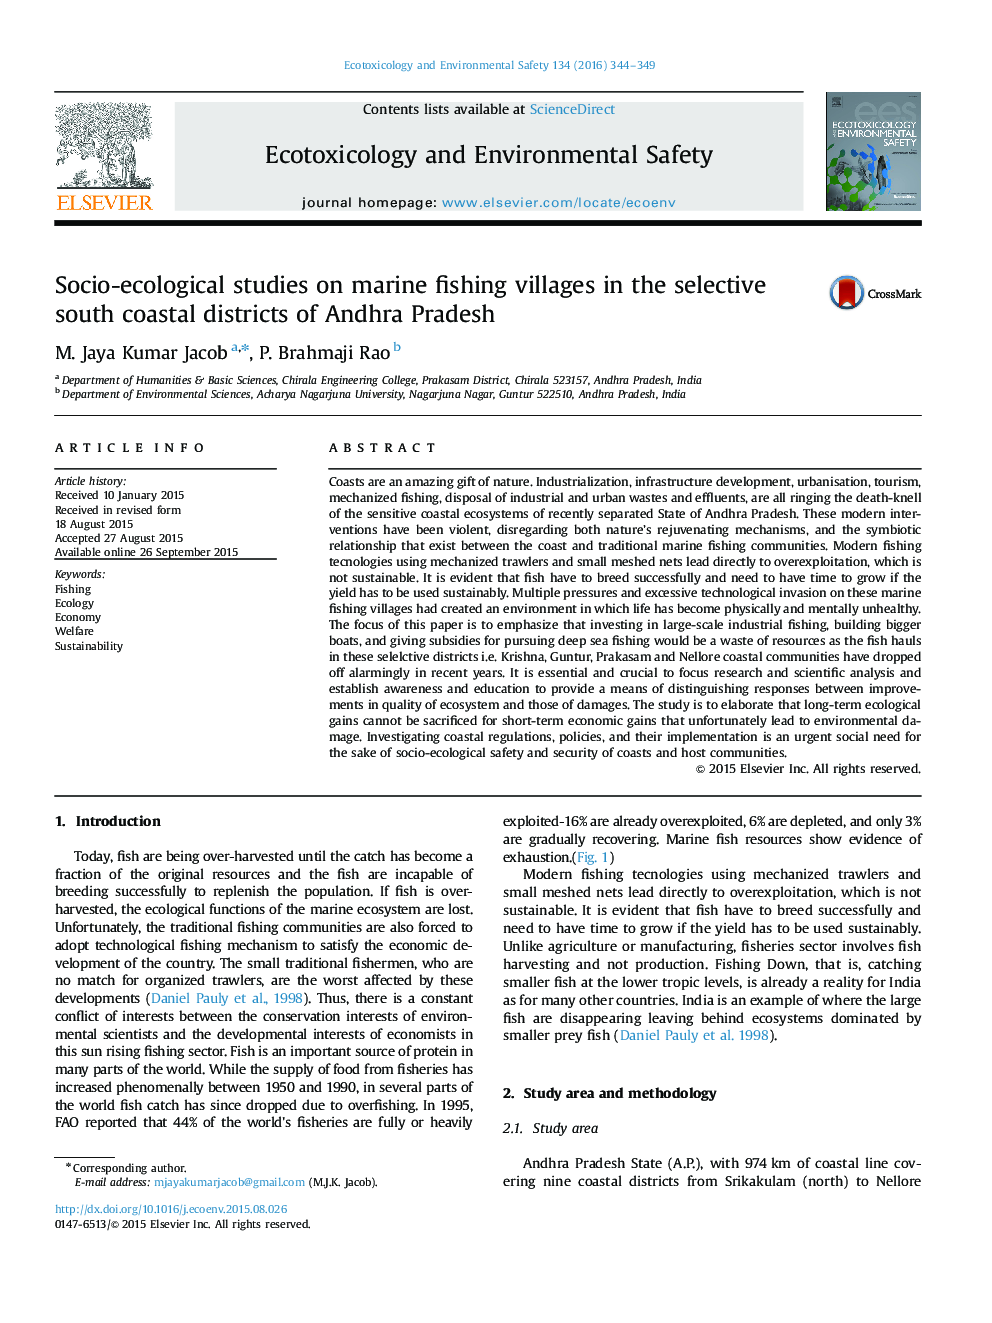 مطالعات اجتماعی و اکولوژیکی در مورد روستاهای ماهیگیری دریایی در مناطق ساحلی جنوبی آندرا پرادش 